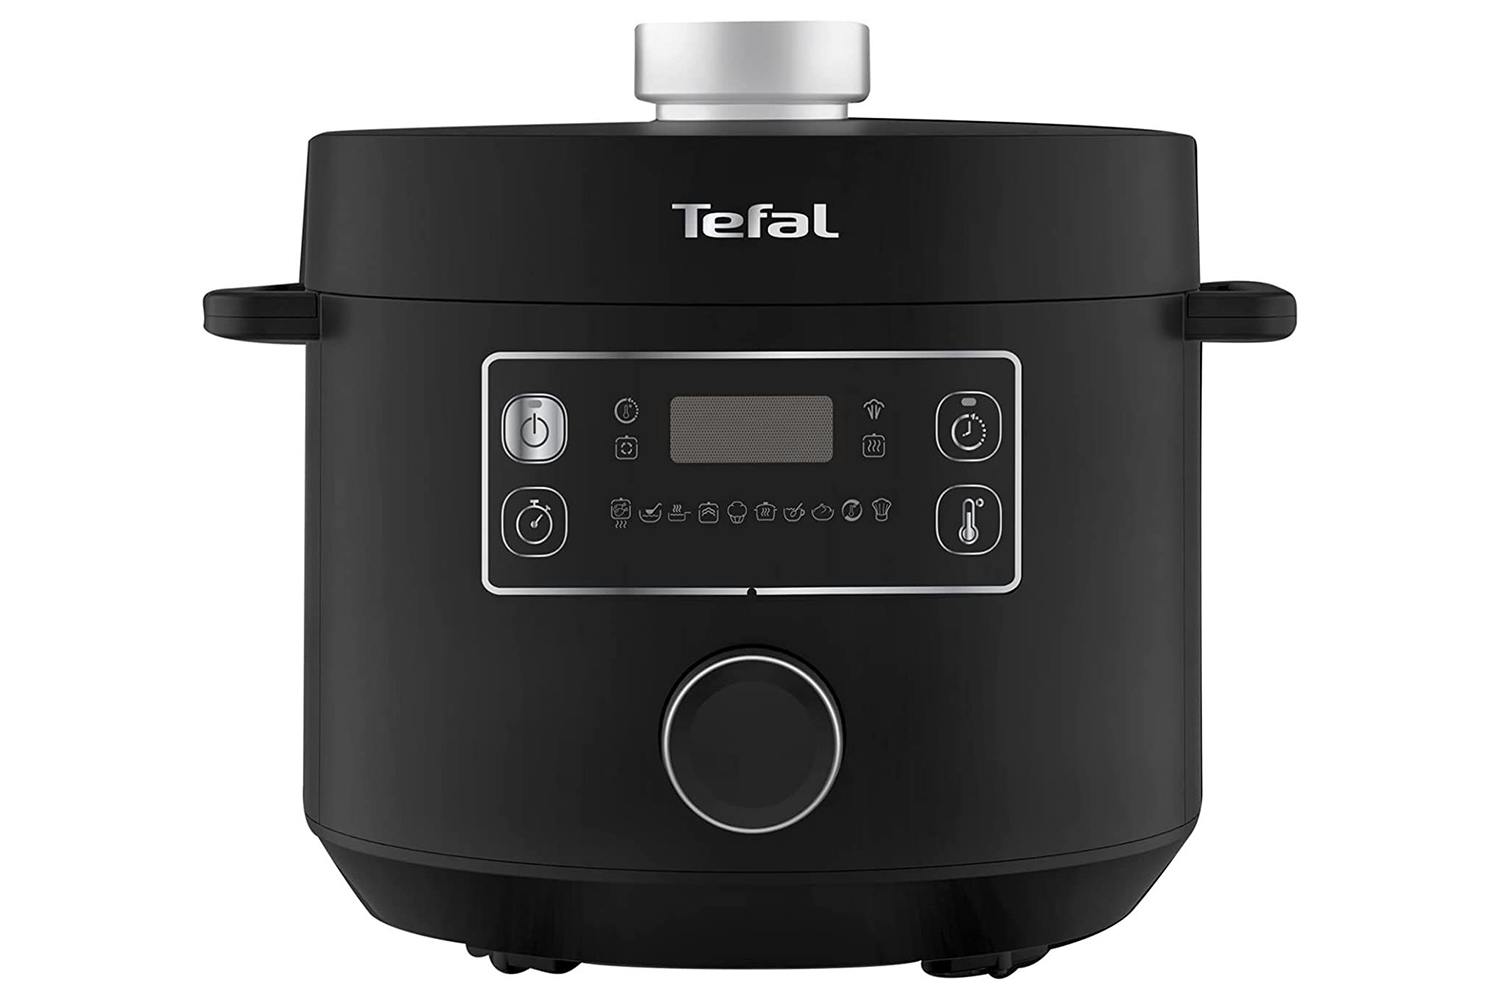 Tefal Pressure Cooker, Shop Online